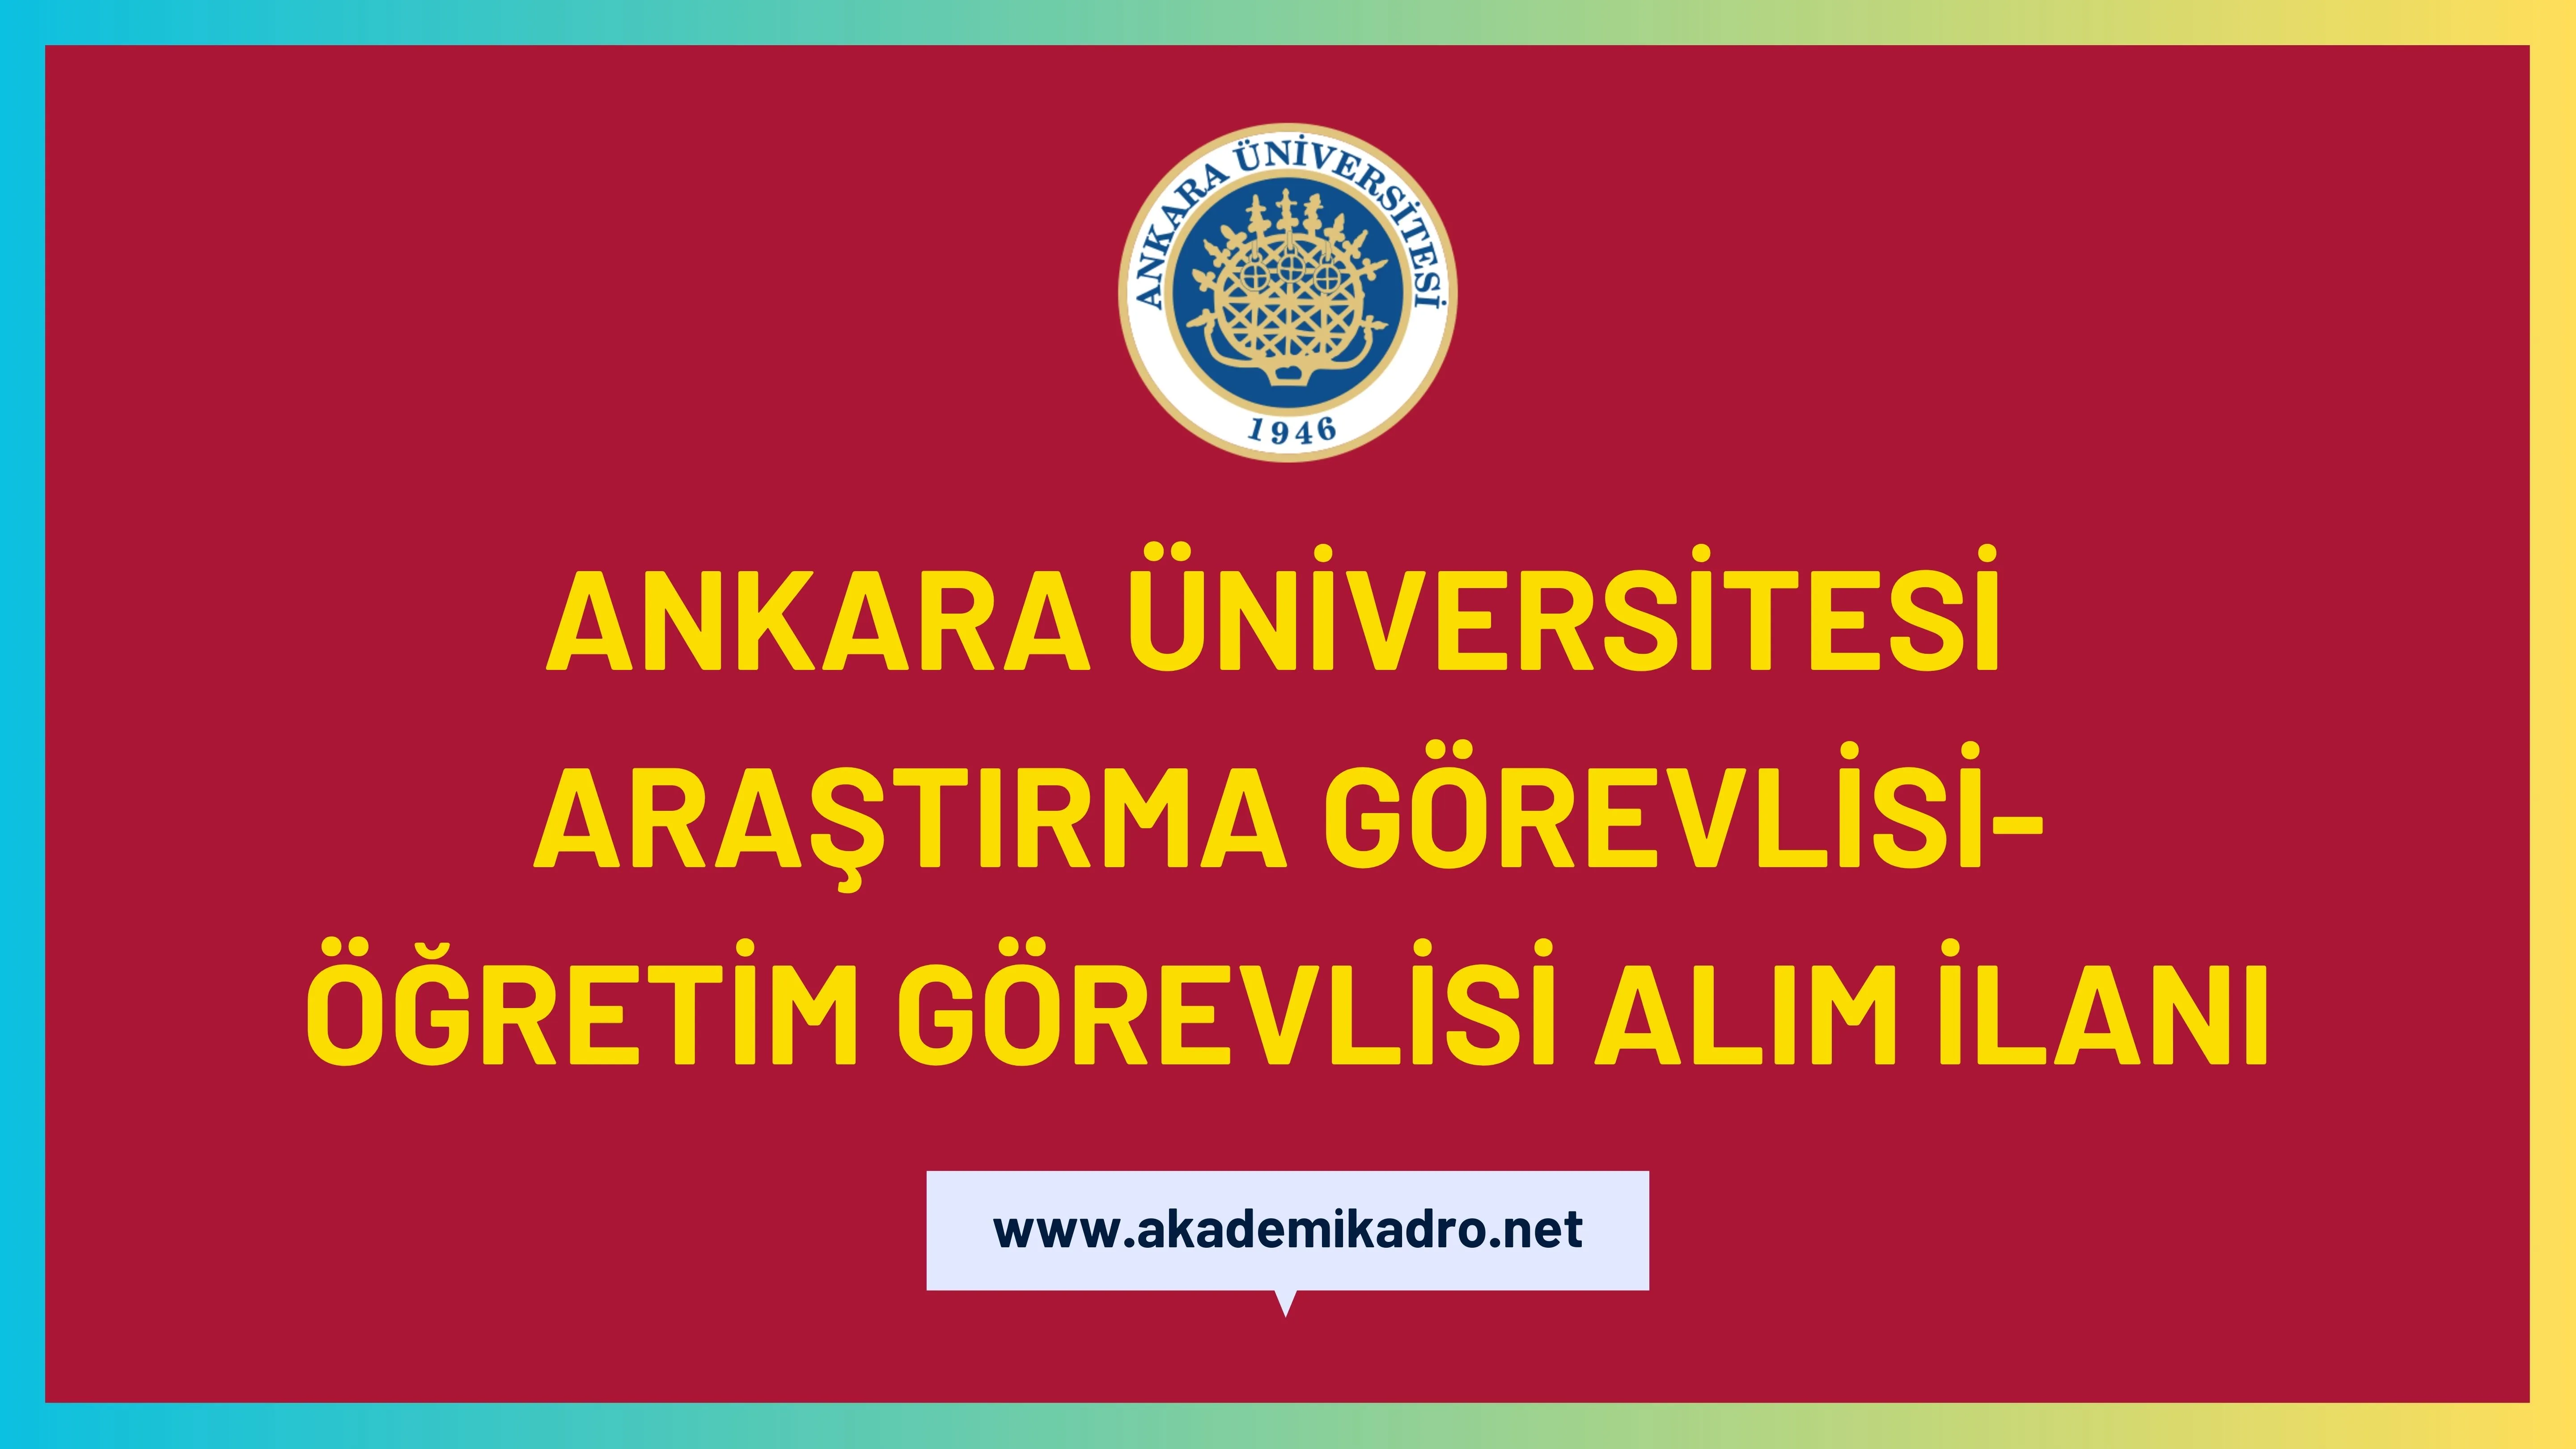 Ankara Üniversitesi Öğretim görevlisi ve Araştırma görevlisi olmak üzere 28 öğretim elemanı alacak.